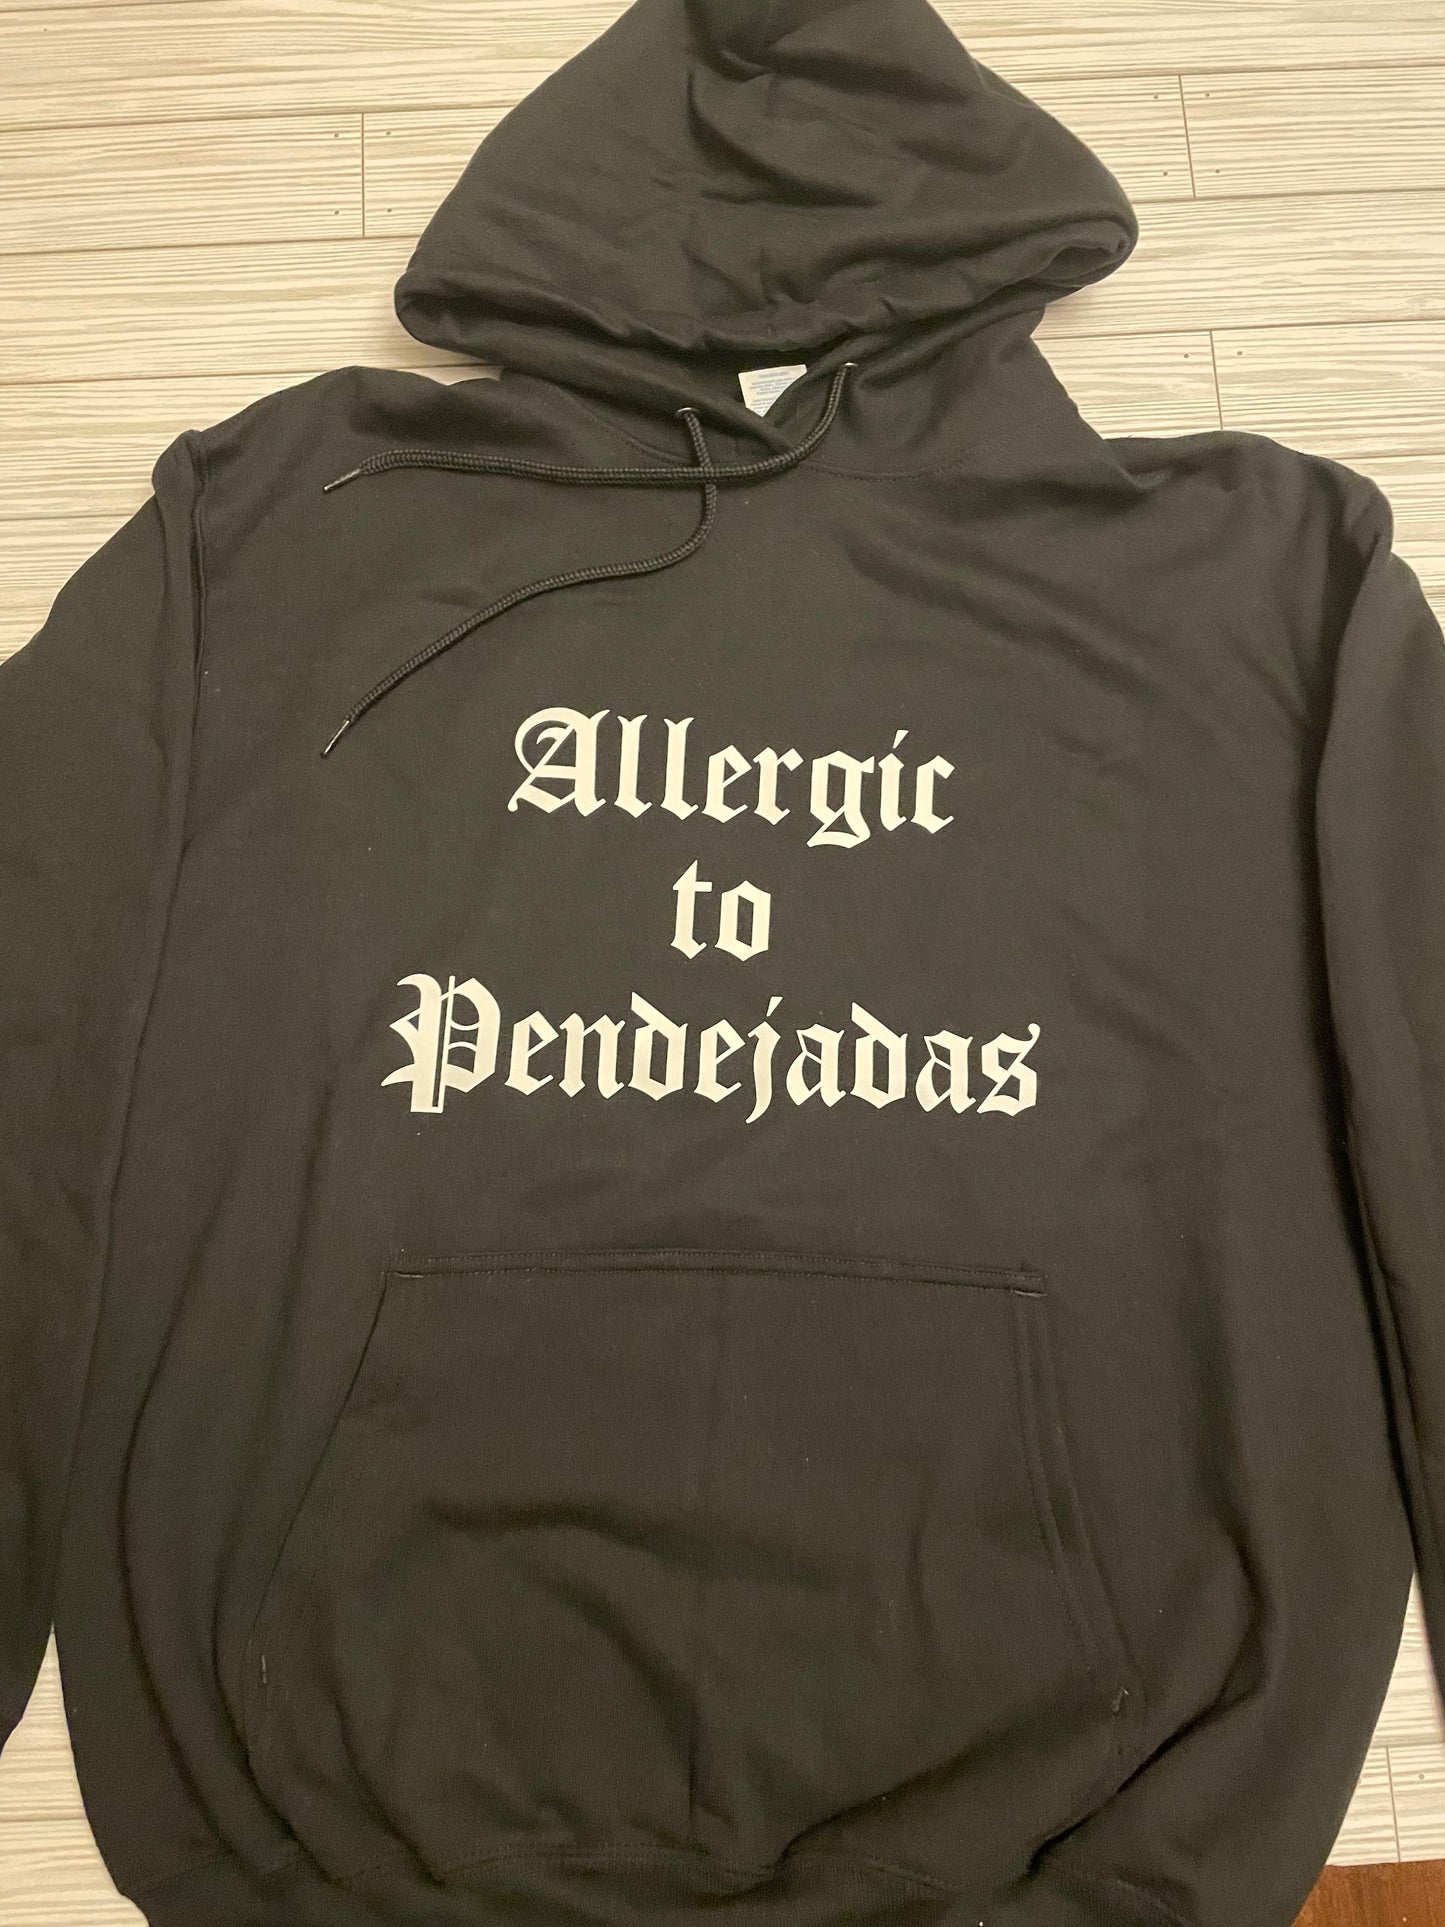 Allergic to Pendejas